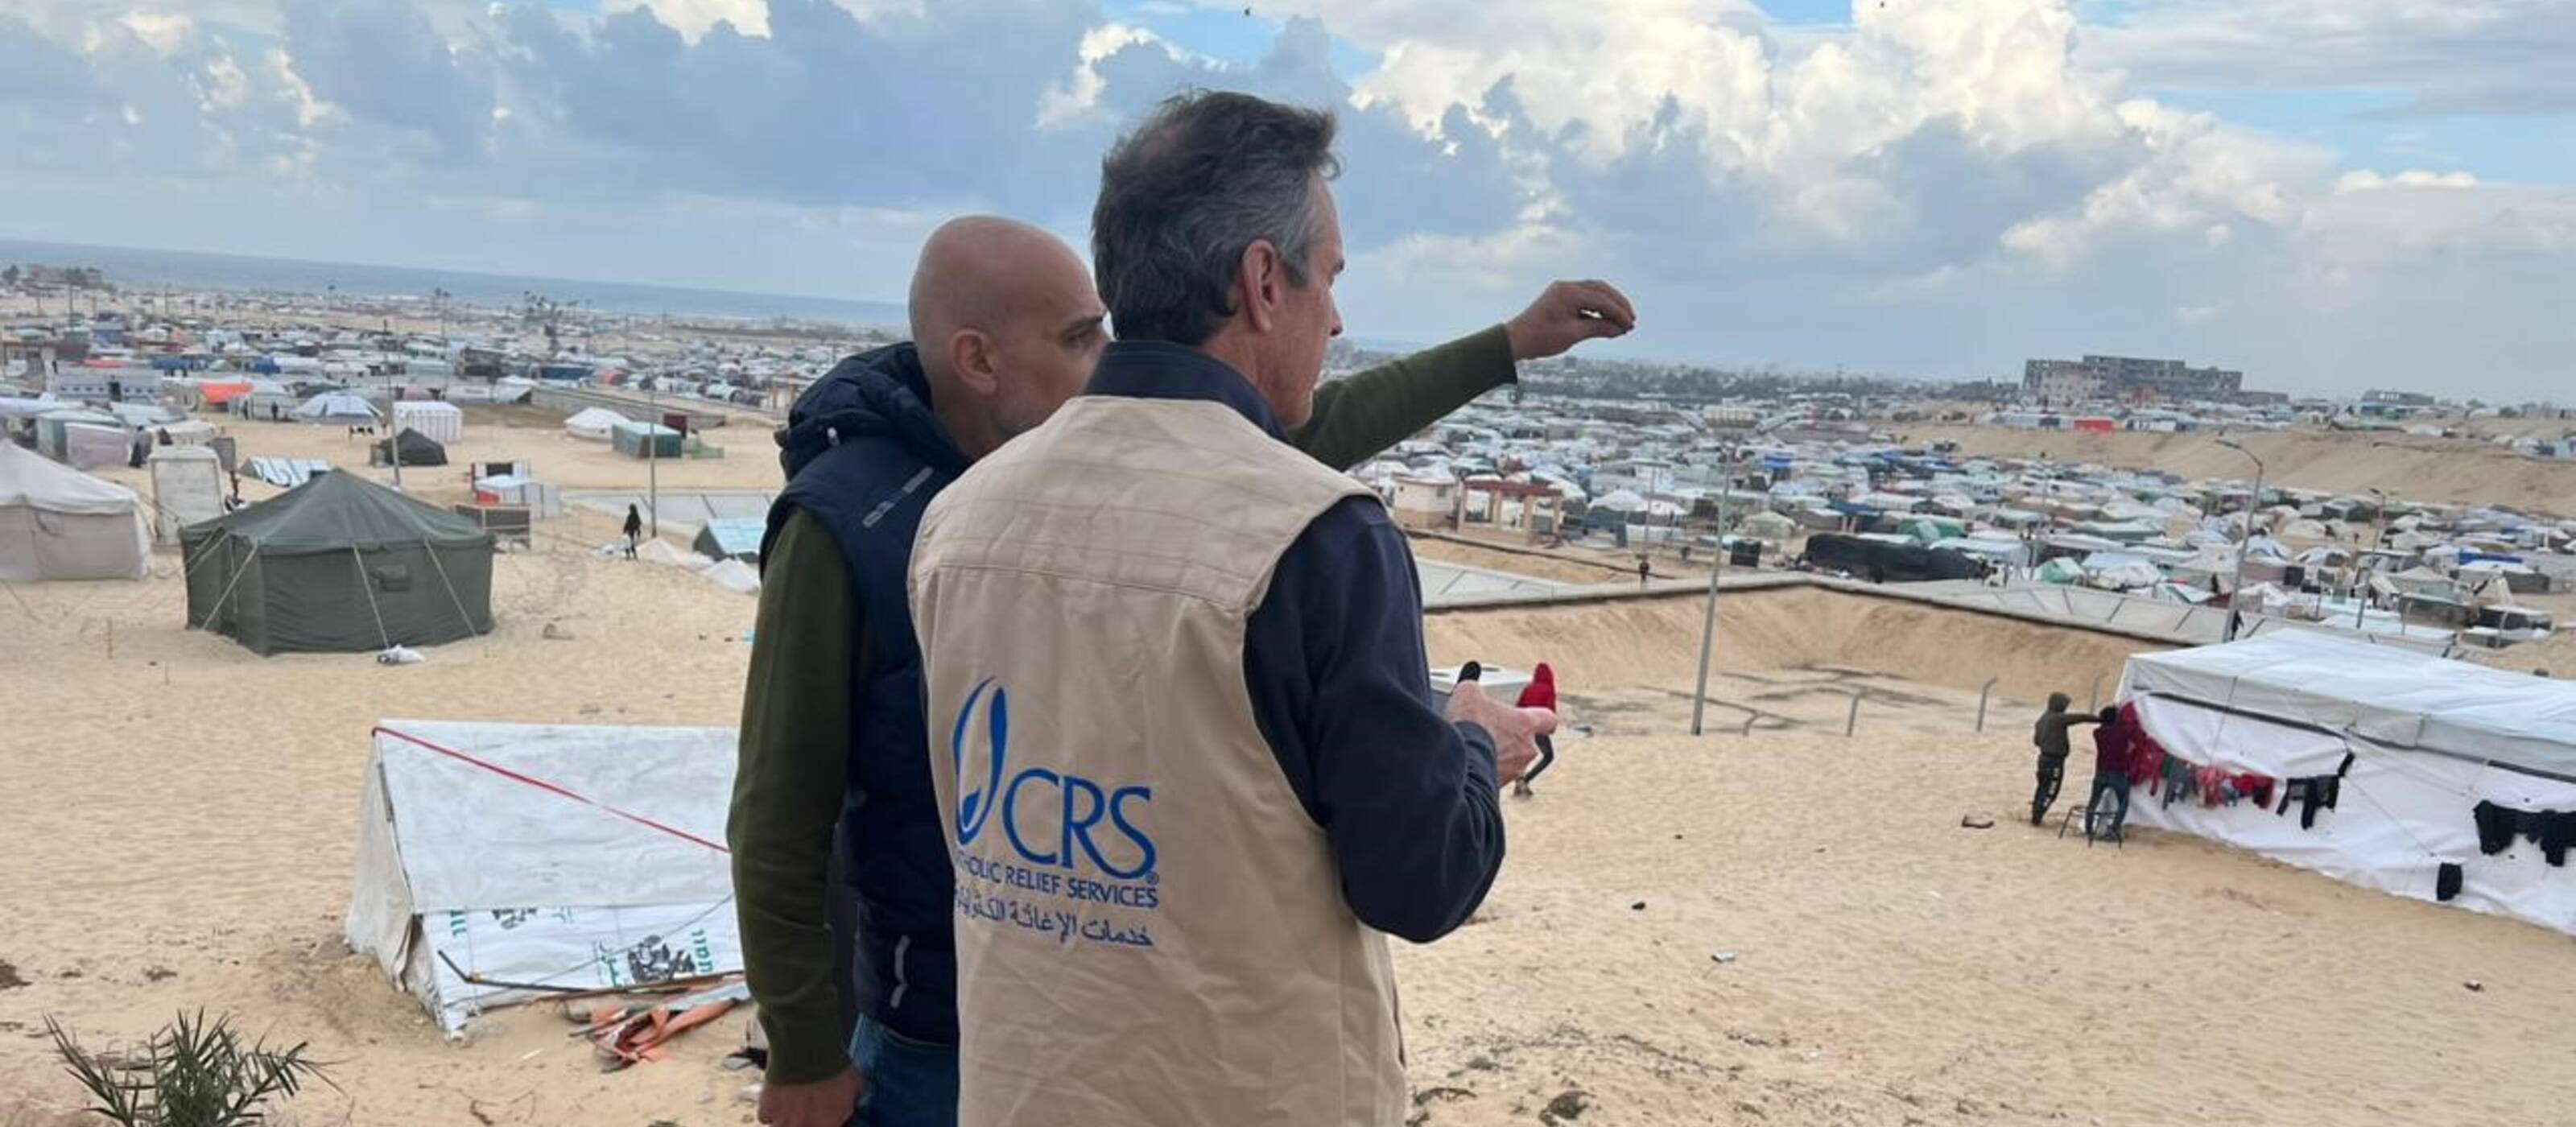 Collaborateurs de CRS, l'organisation partenaire de Caritas, à Gaza